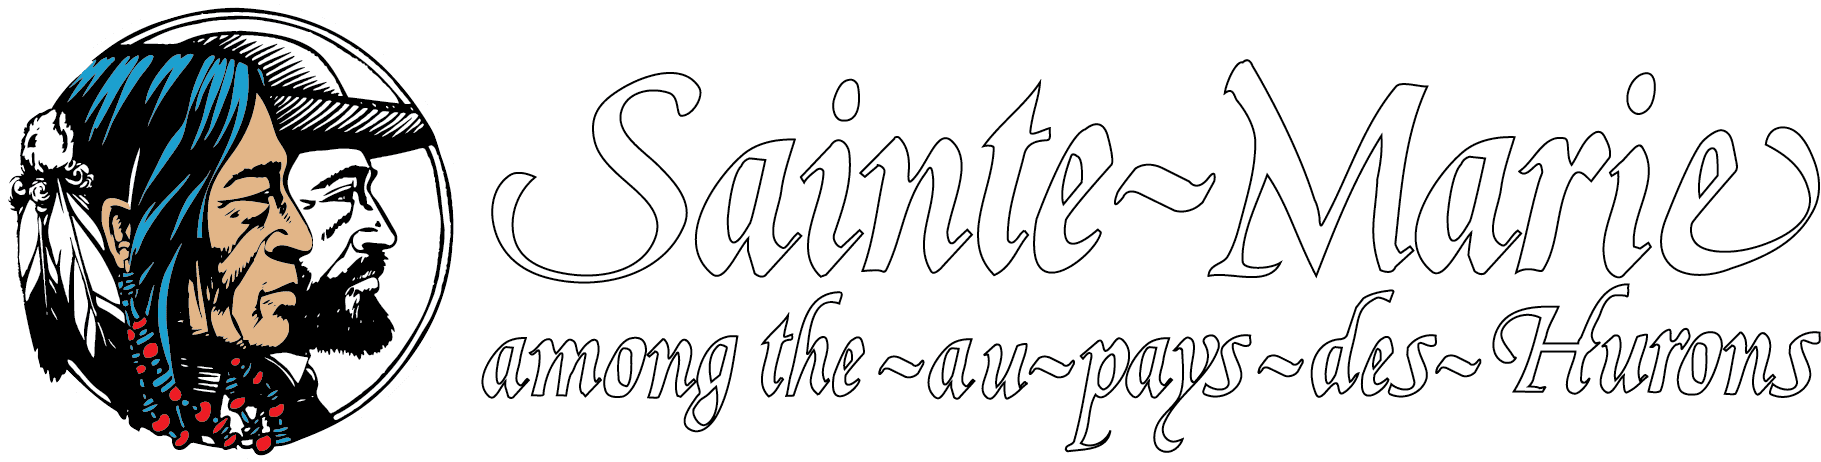 Sainte-Marie among the Hurons logo